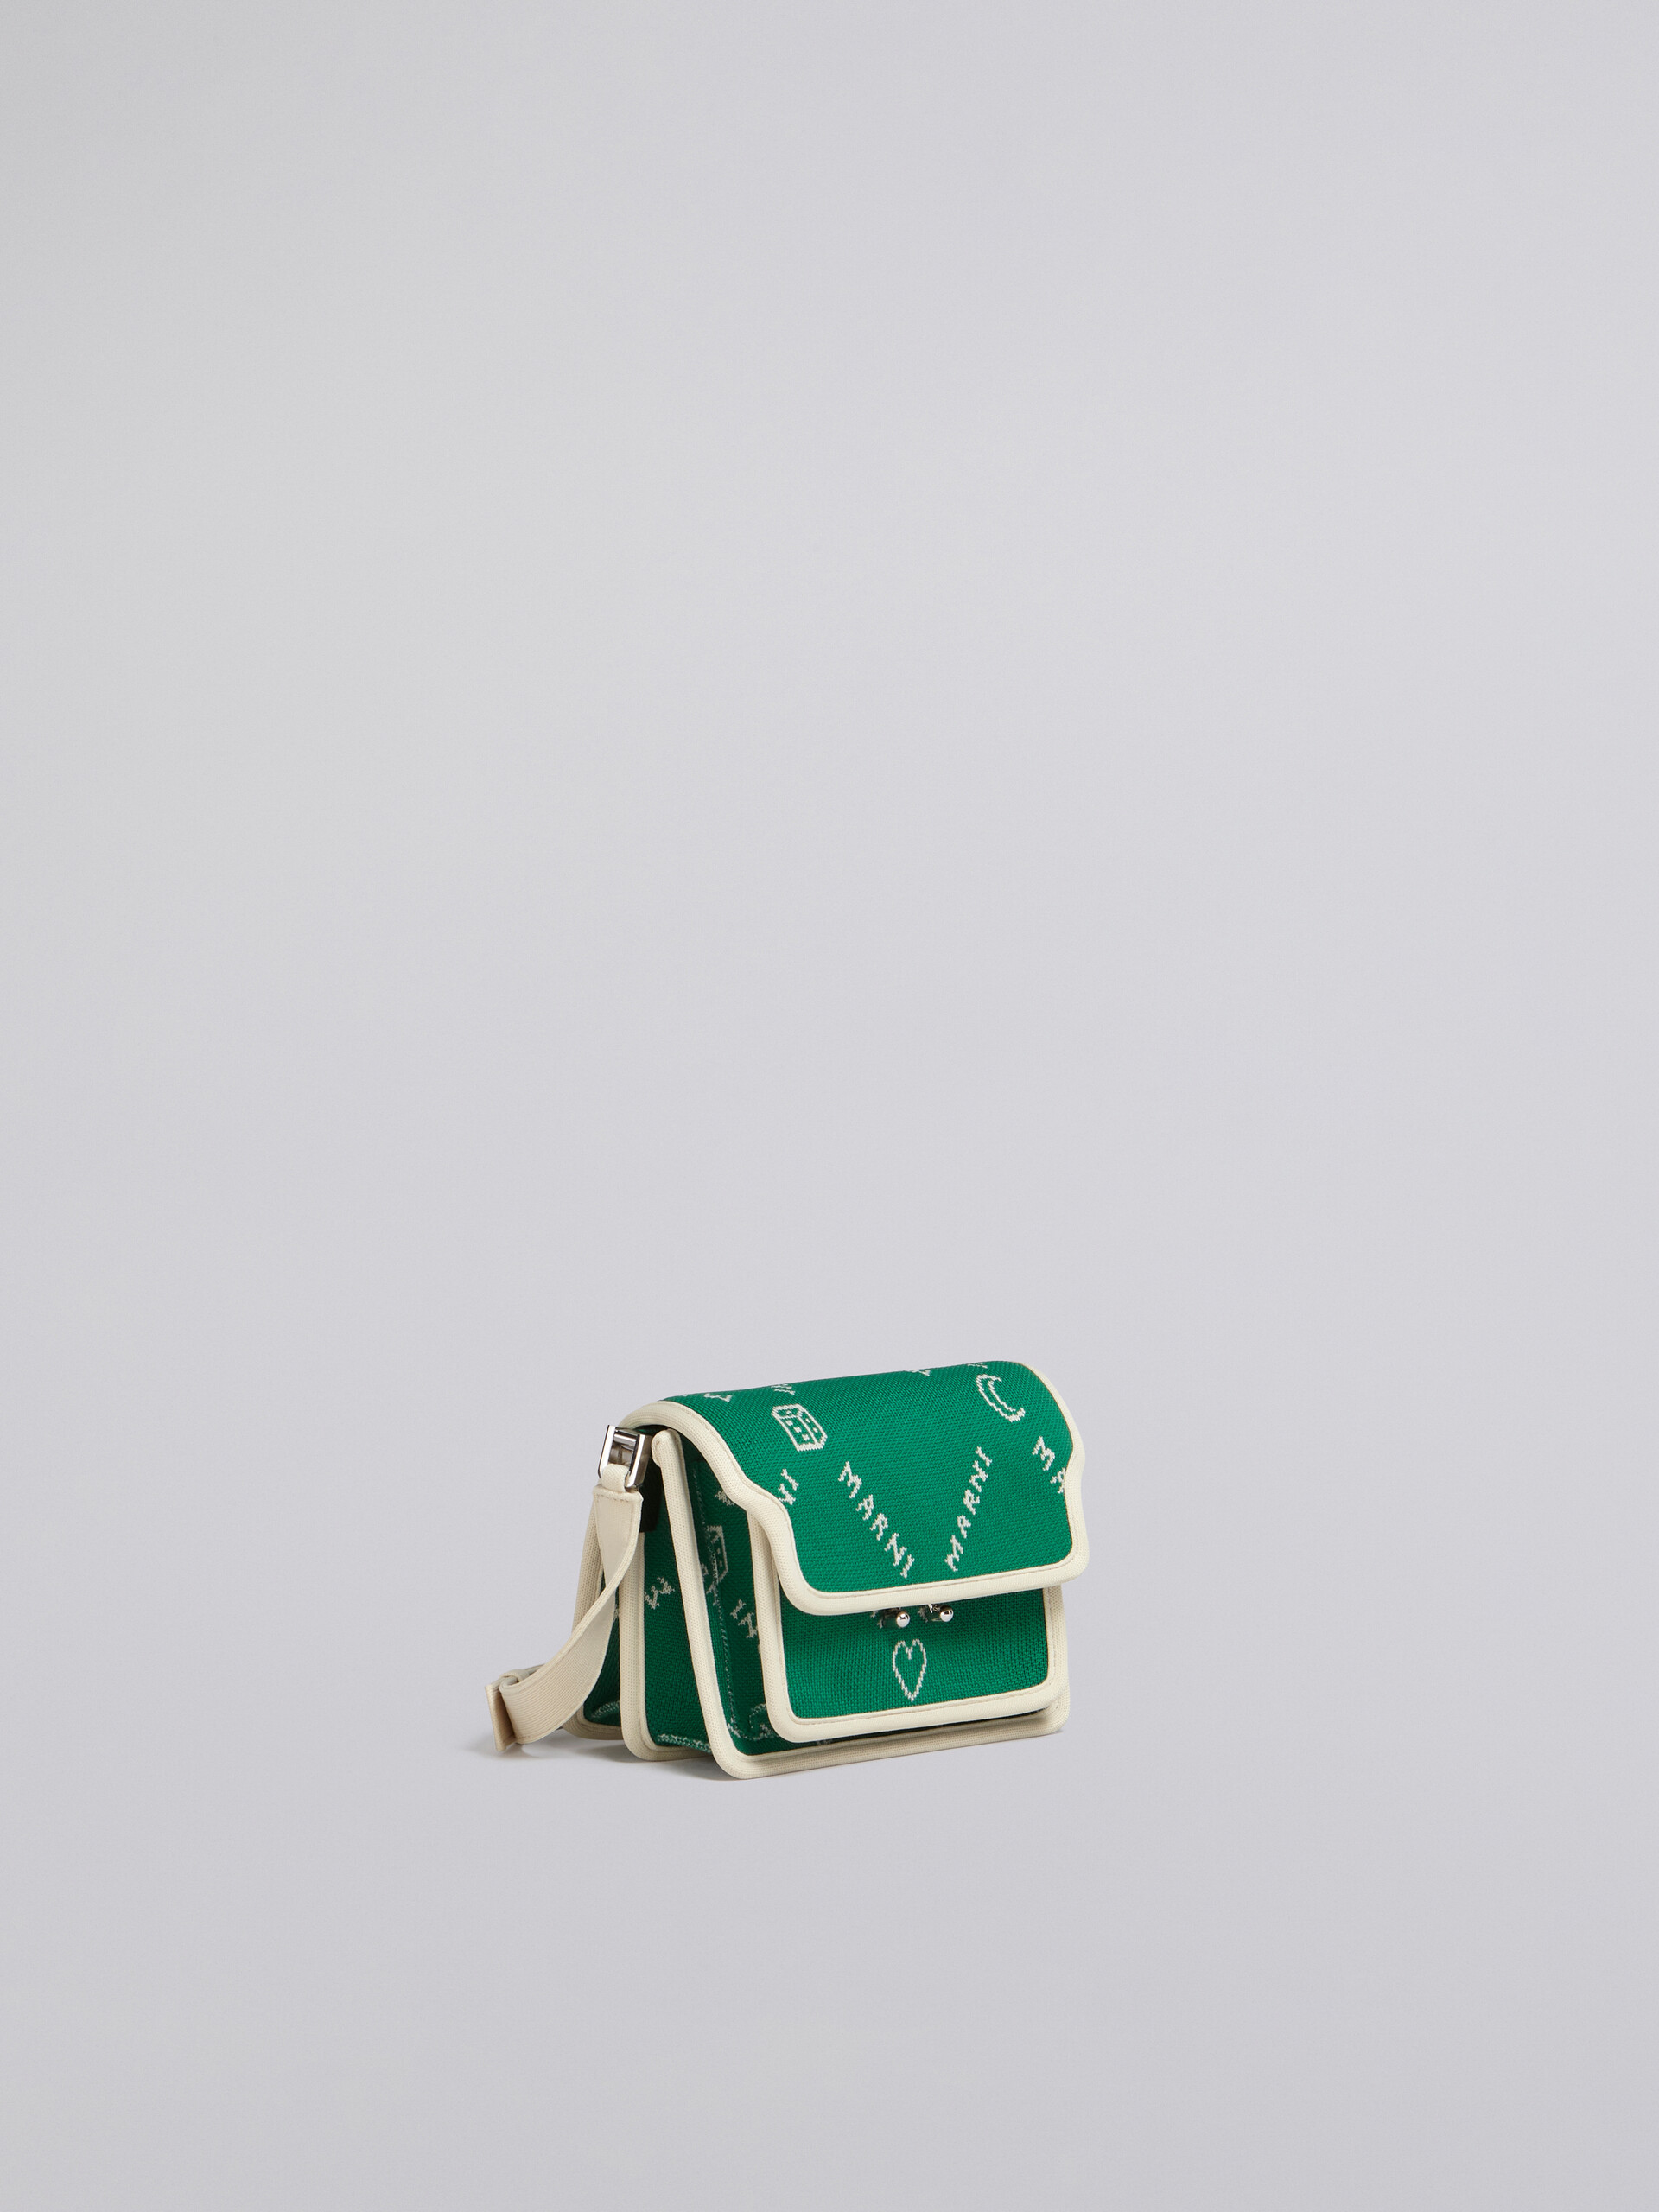 TRUNK SOFT mini bag in green Marnigram jacquard - Shoulder Bags - Image 6